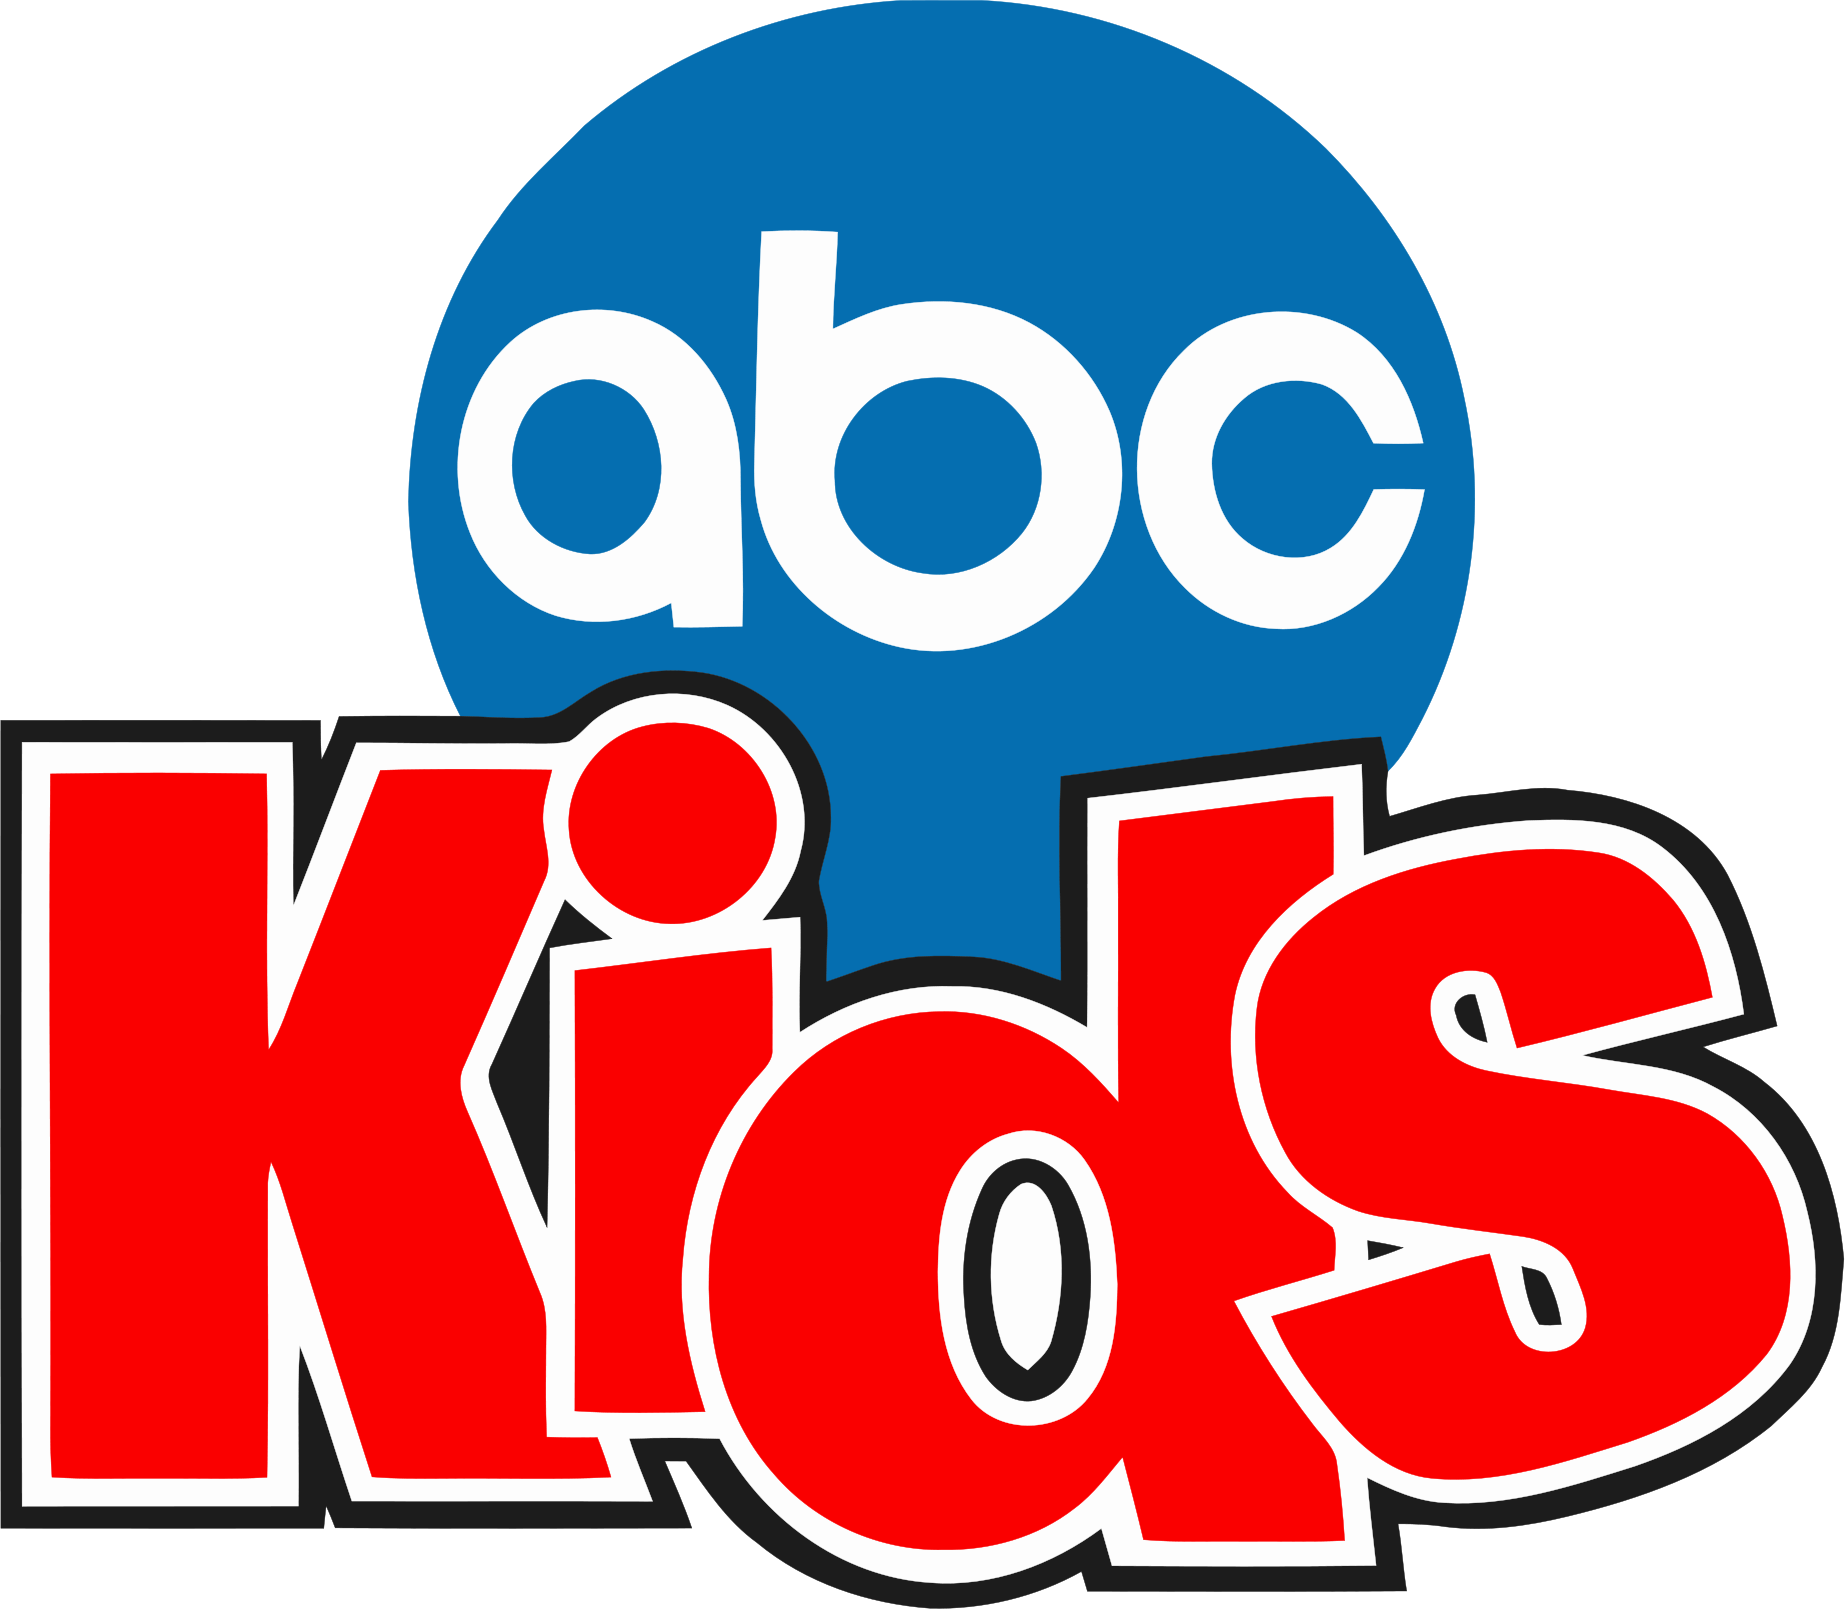 Image Abc Kidspng Dream Logos Wiki Fandom Powered By Wikia